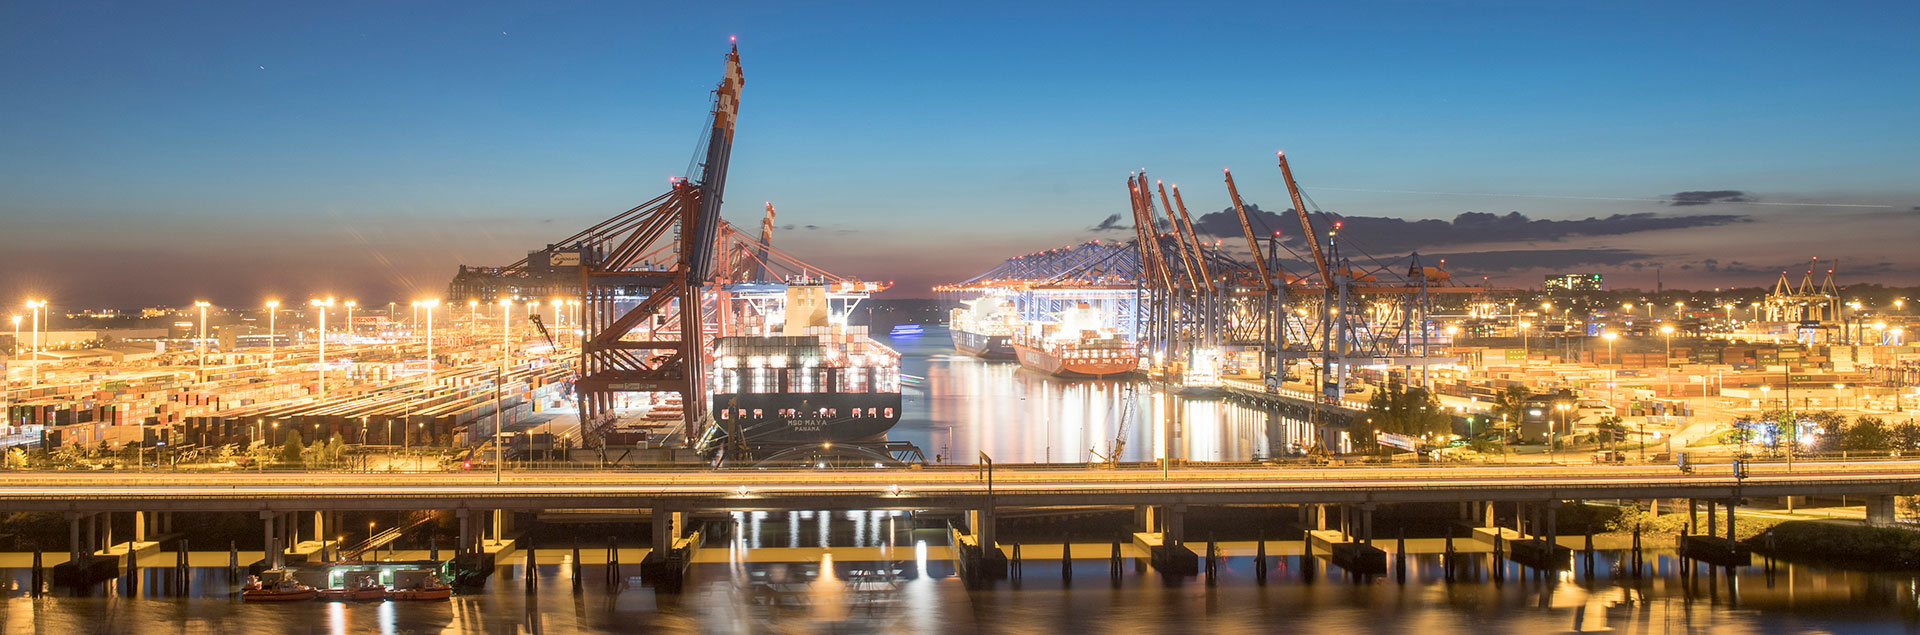 Hamburg Hafen Containerschiff Brücke. Unsere Vision ist die Digitalisierung des Hafens.